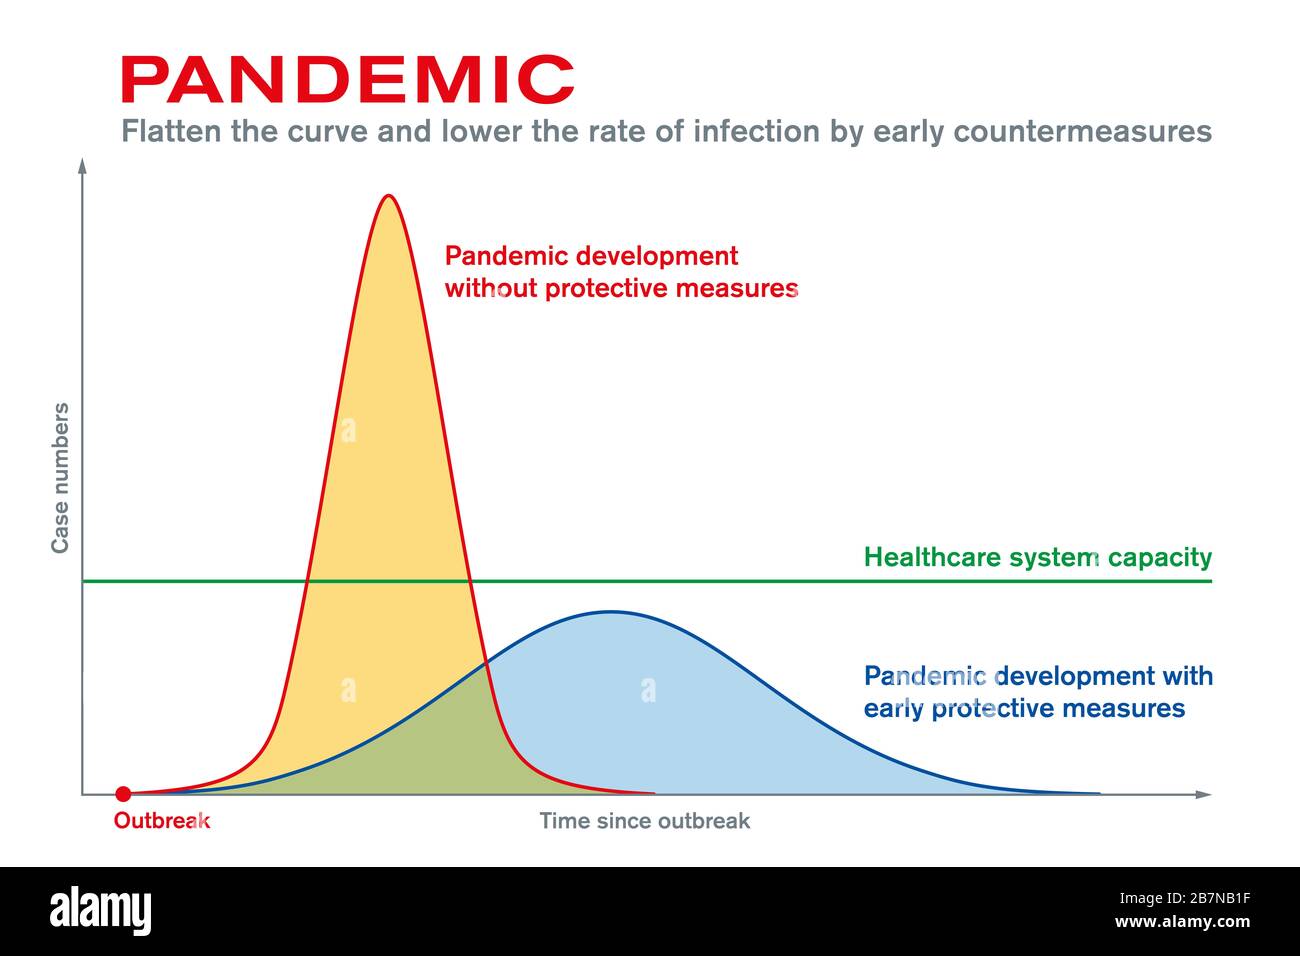 Pandemia. Appiattire la curva, ridurre il tasso di infezione con contromisure precoci. Misure protettive dopo l'epidemia mantenere il sistema sanitario. Foto Stock